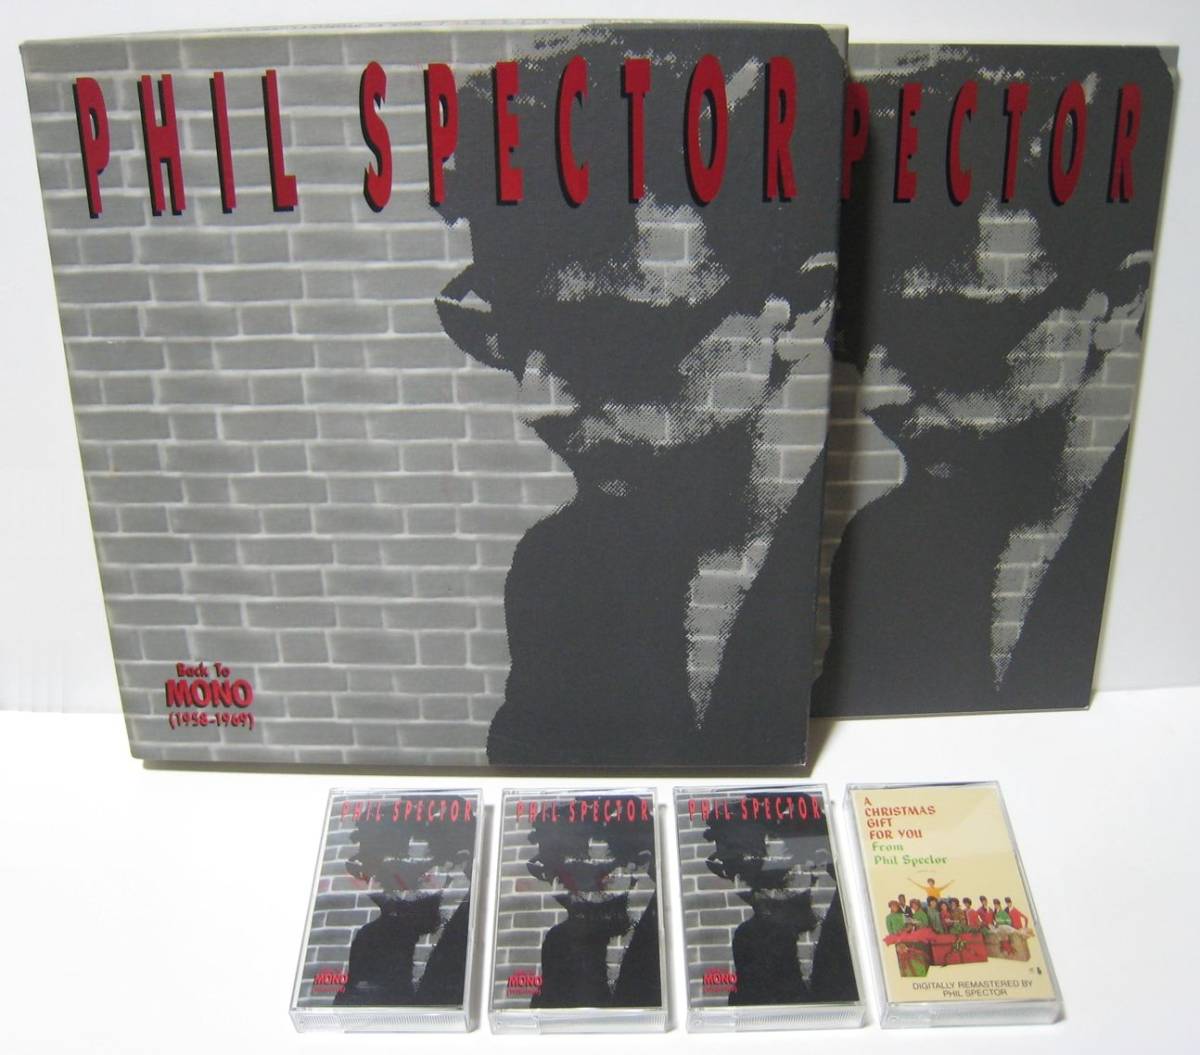 【カセットテープ】 PHIL SPECTOR / BACK TO MONO (1958-1969) US版 4本組ボックスセット フィル・スペクター